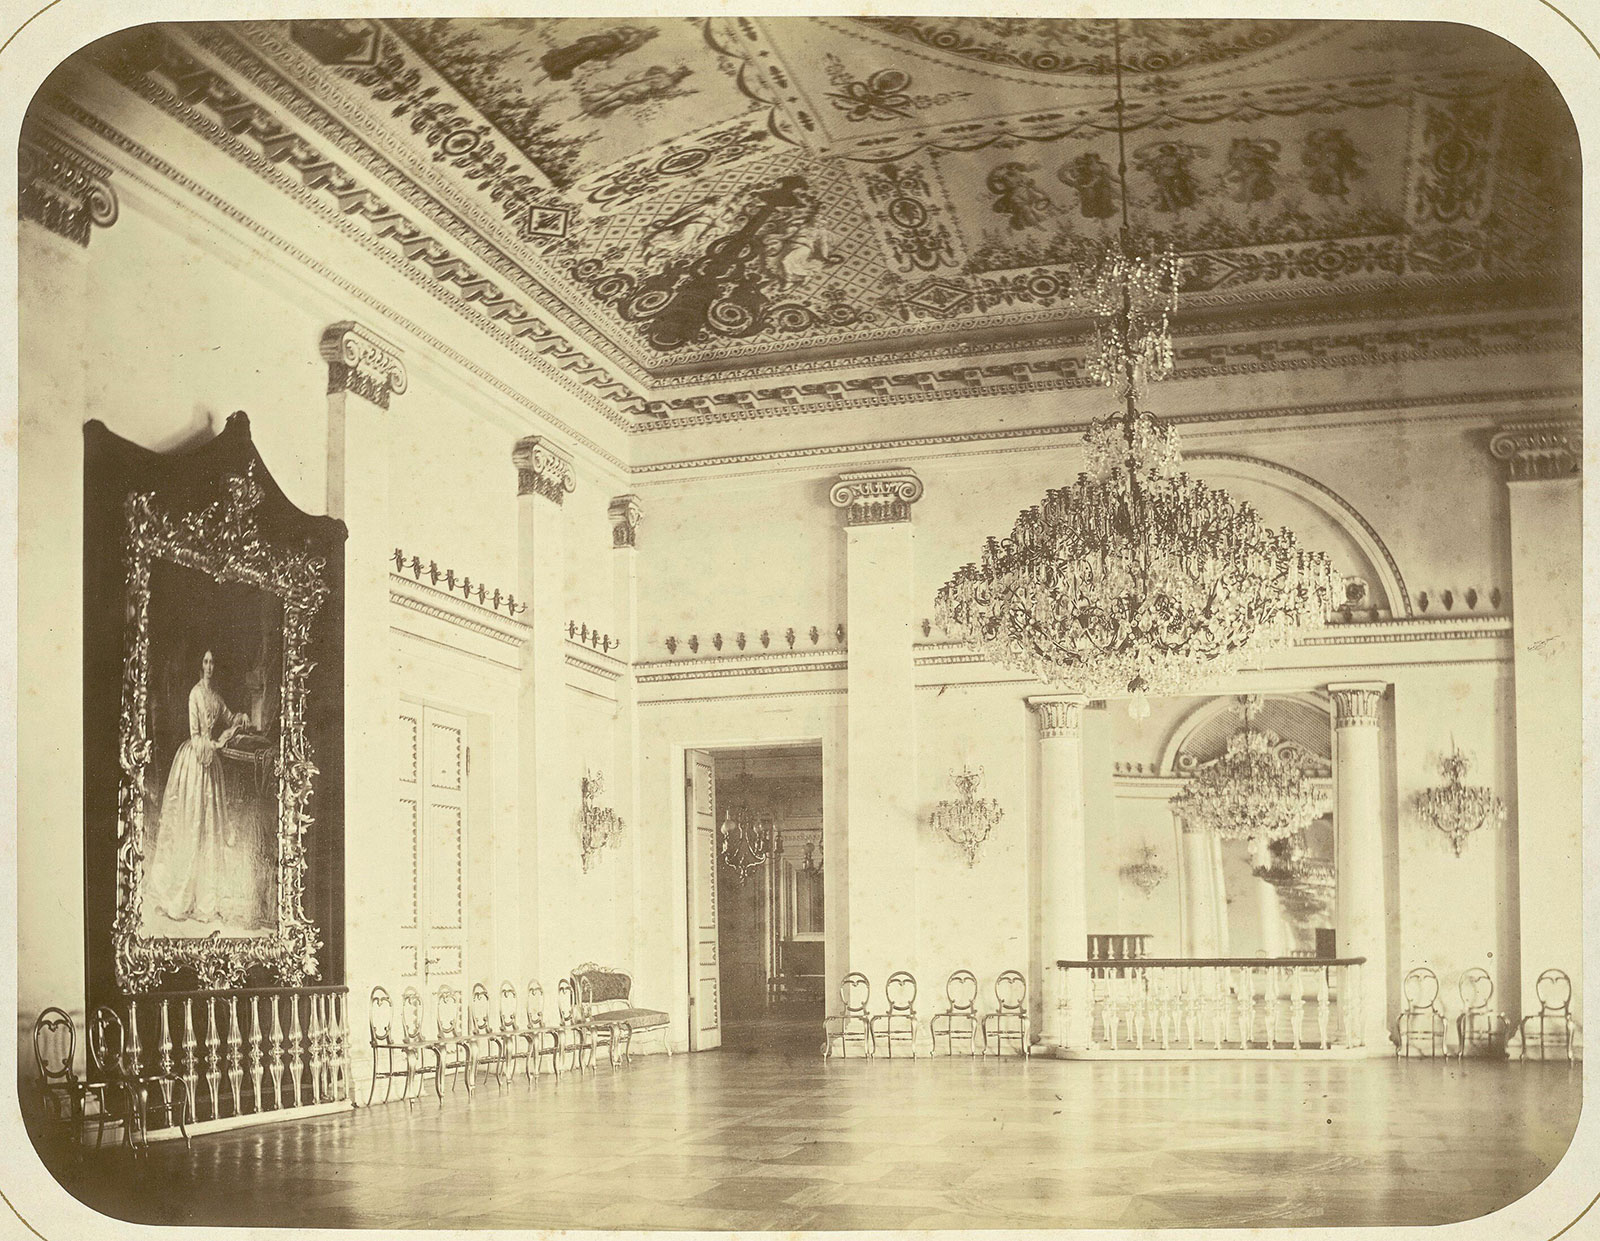 Бальный зал Юсуповского дворца на Мойке в Петербурге, фото 1860-1870 г.